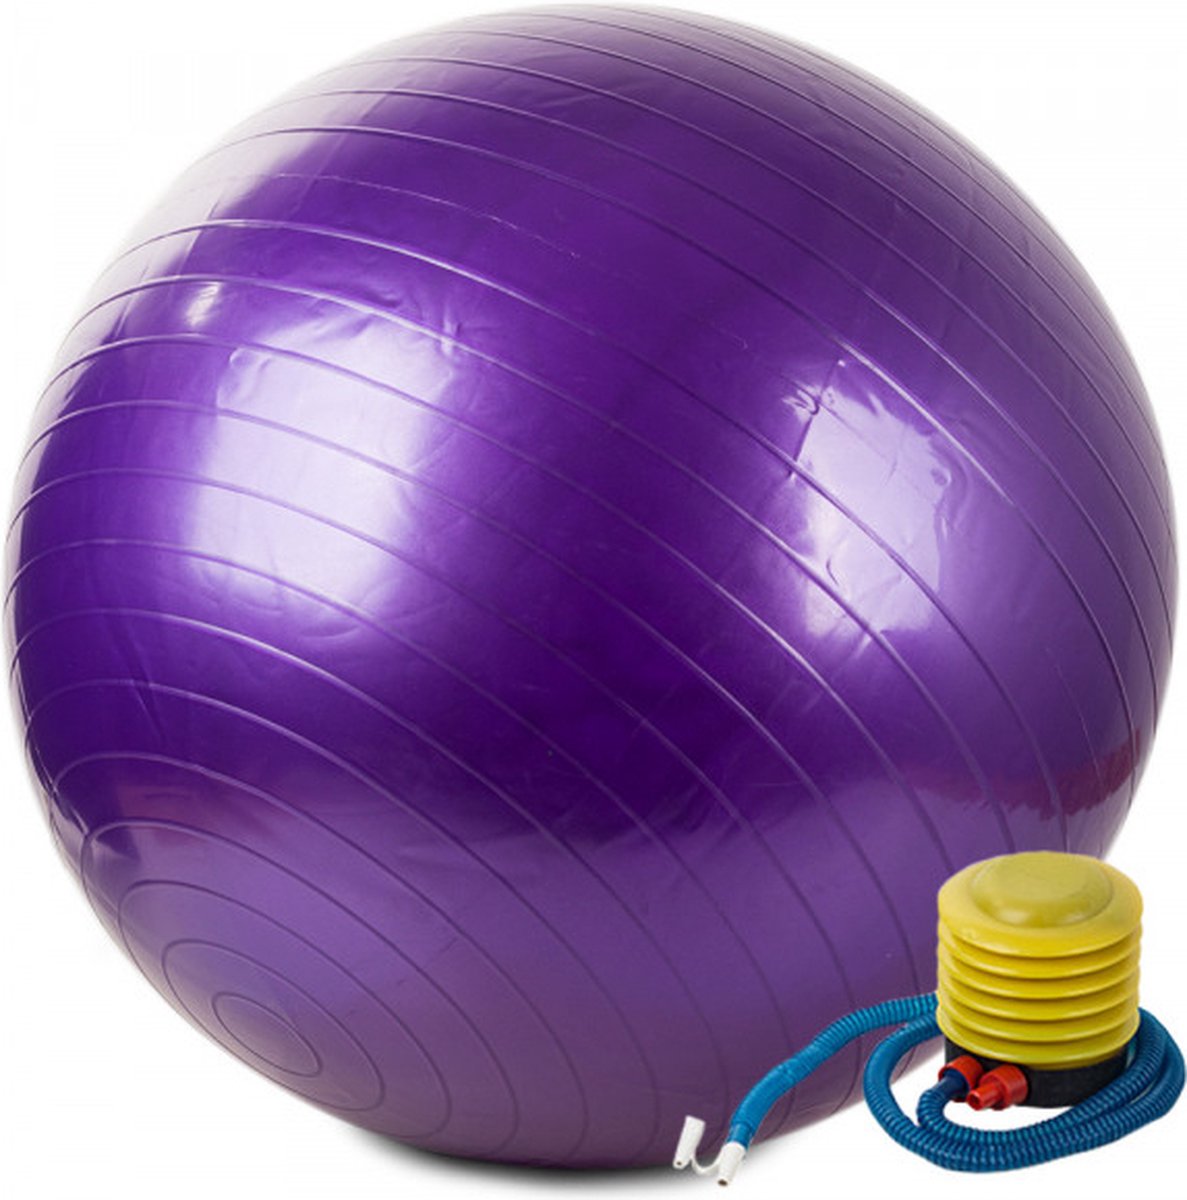 Fitness bal - Yoga bal - Pilates bal - Gymbal - Zitbal - Zwangerschapsball 65 cm plus pomp PAARS